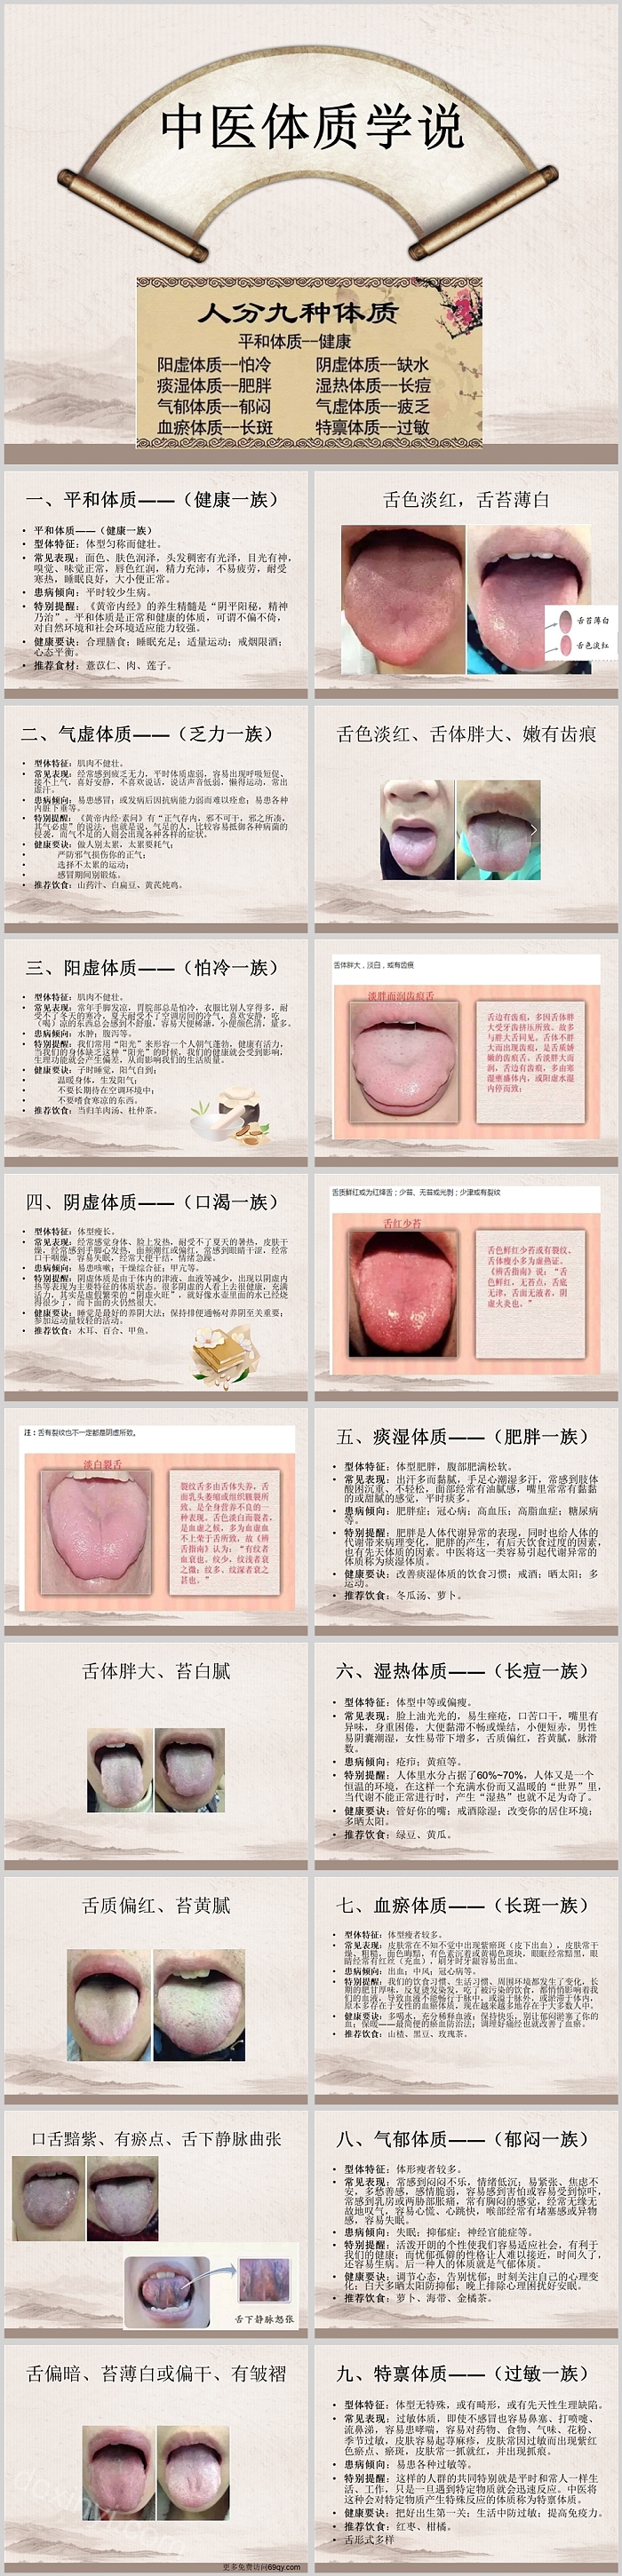 中医九种体质舌诊19页PPT模板